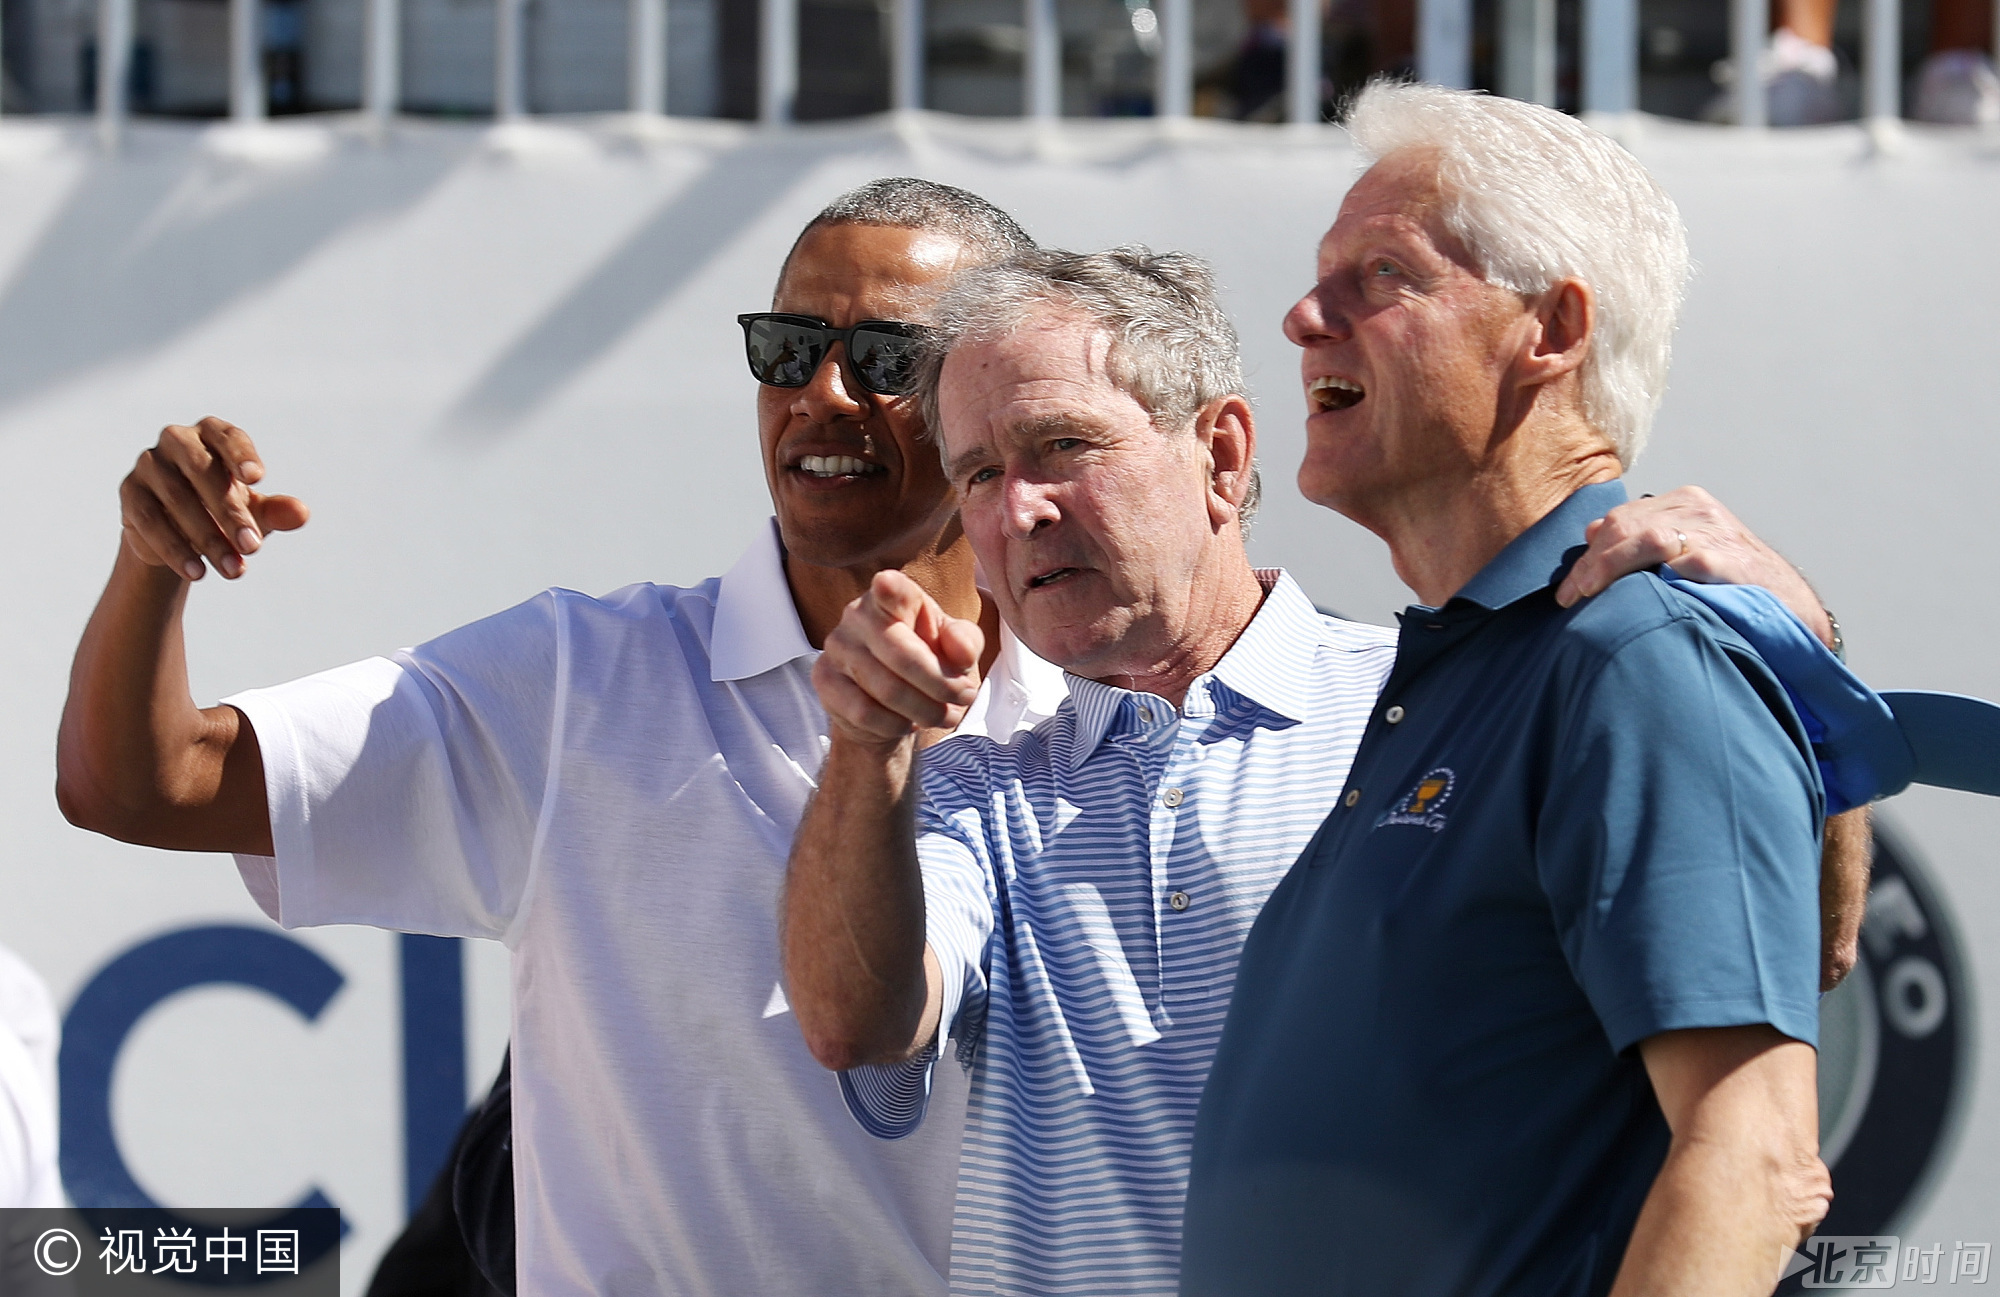 当地时间8月28日，2017年总统杯在美国新泽西州泽西城的自由国家高尔夫俱乐部举行，为期4天。当天，美国三位前总统比尔·克林顿、乔治·W·布什、巴拉克·奥巴马现身球场观看比赛。图/视觉中国